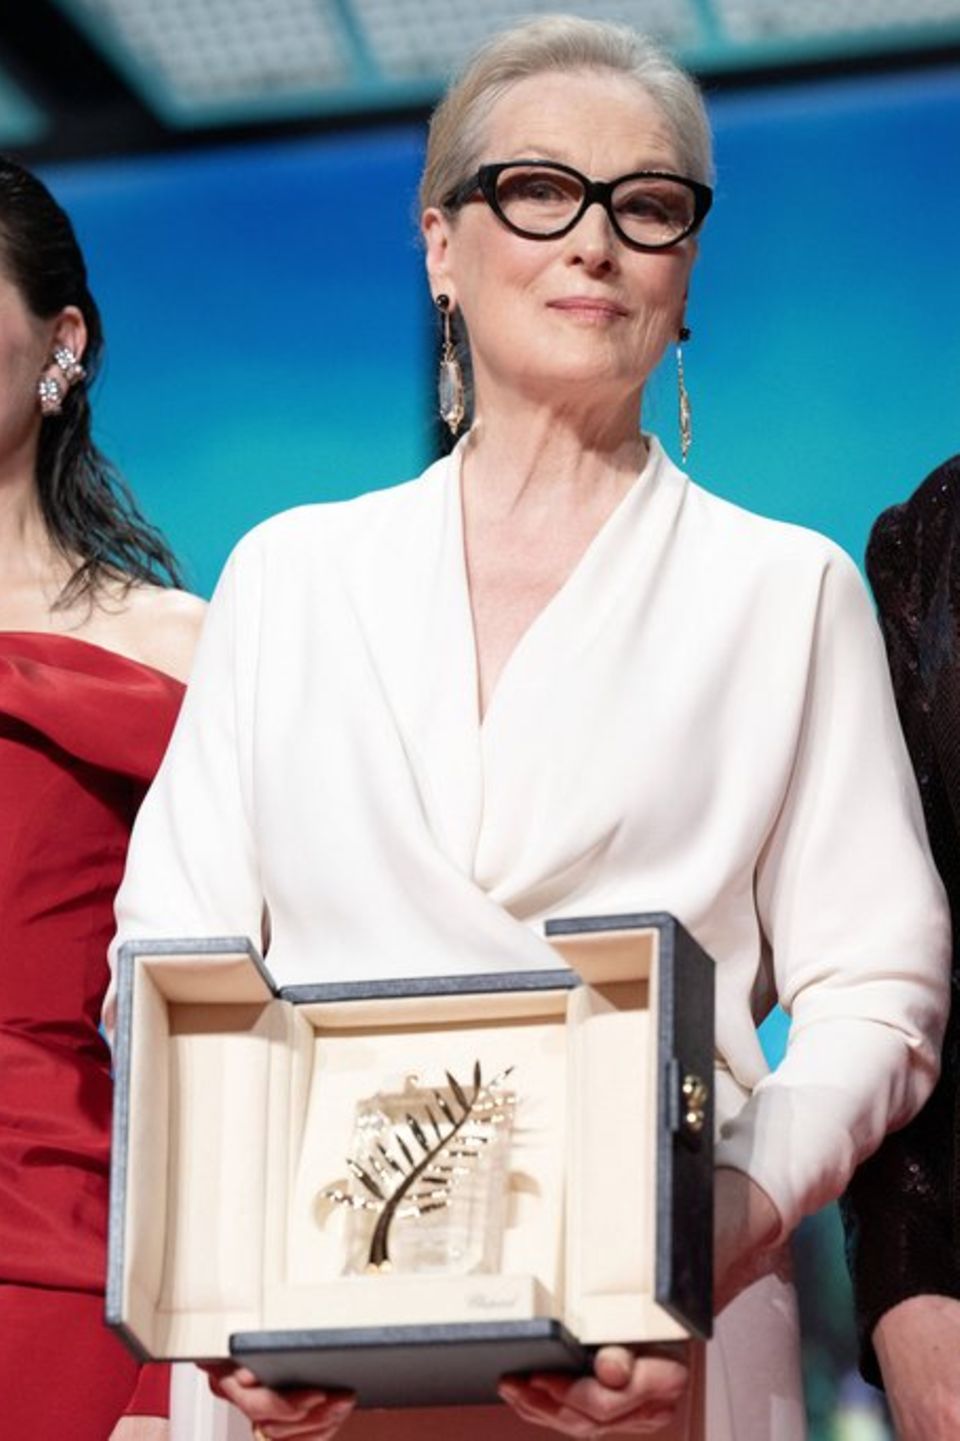 Meryl Streep zeigte sich "sehr geehrt" über die Ehrenpalme.